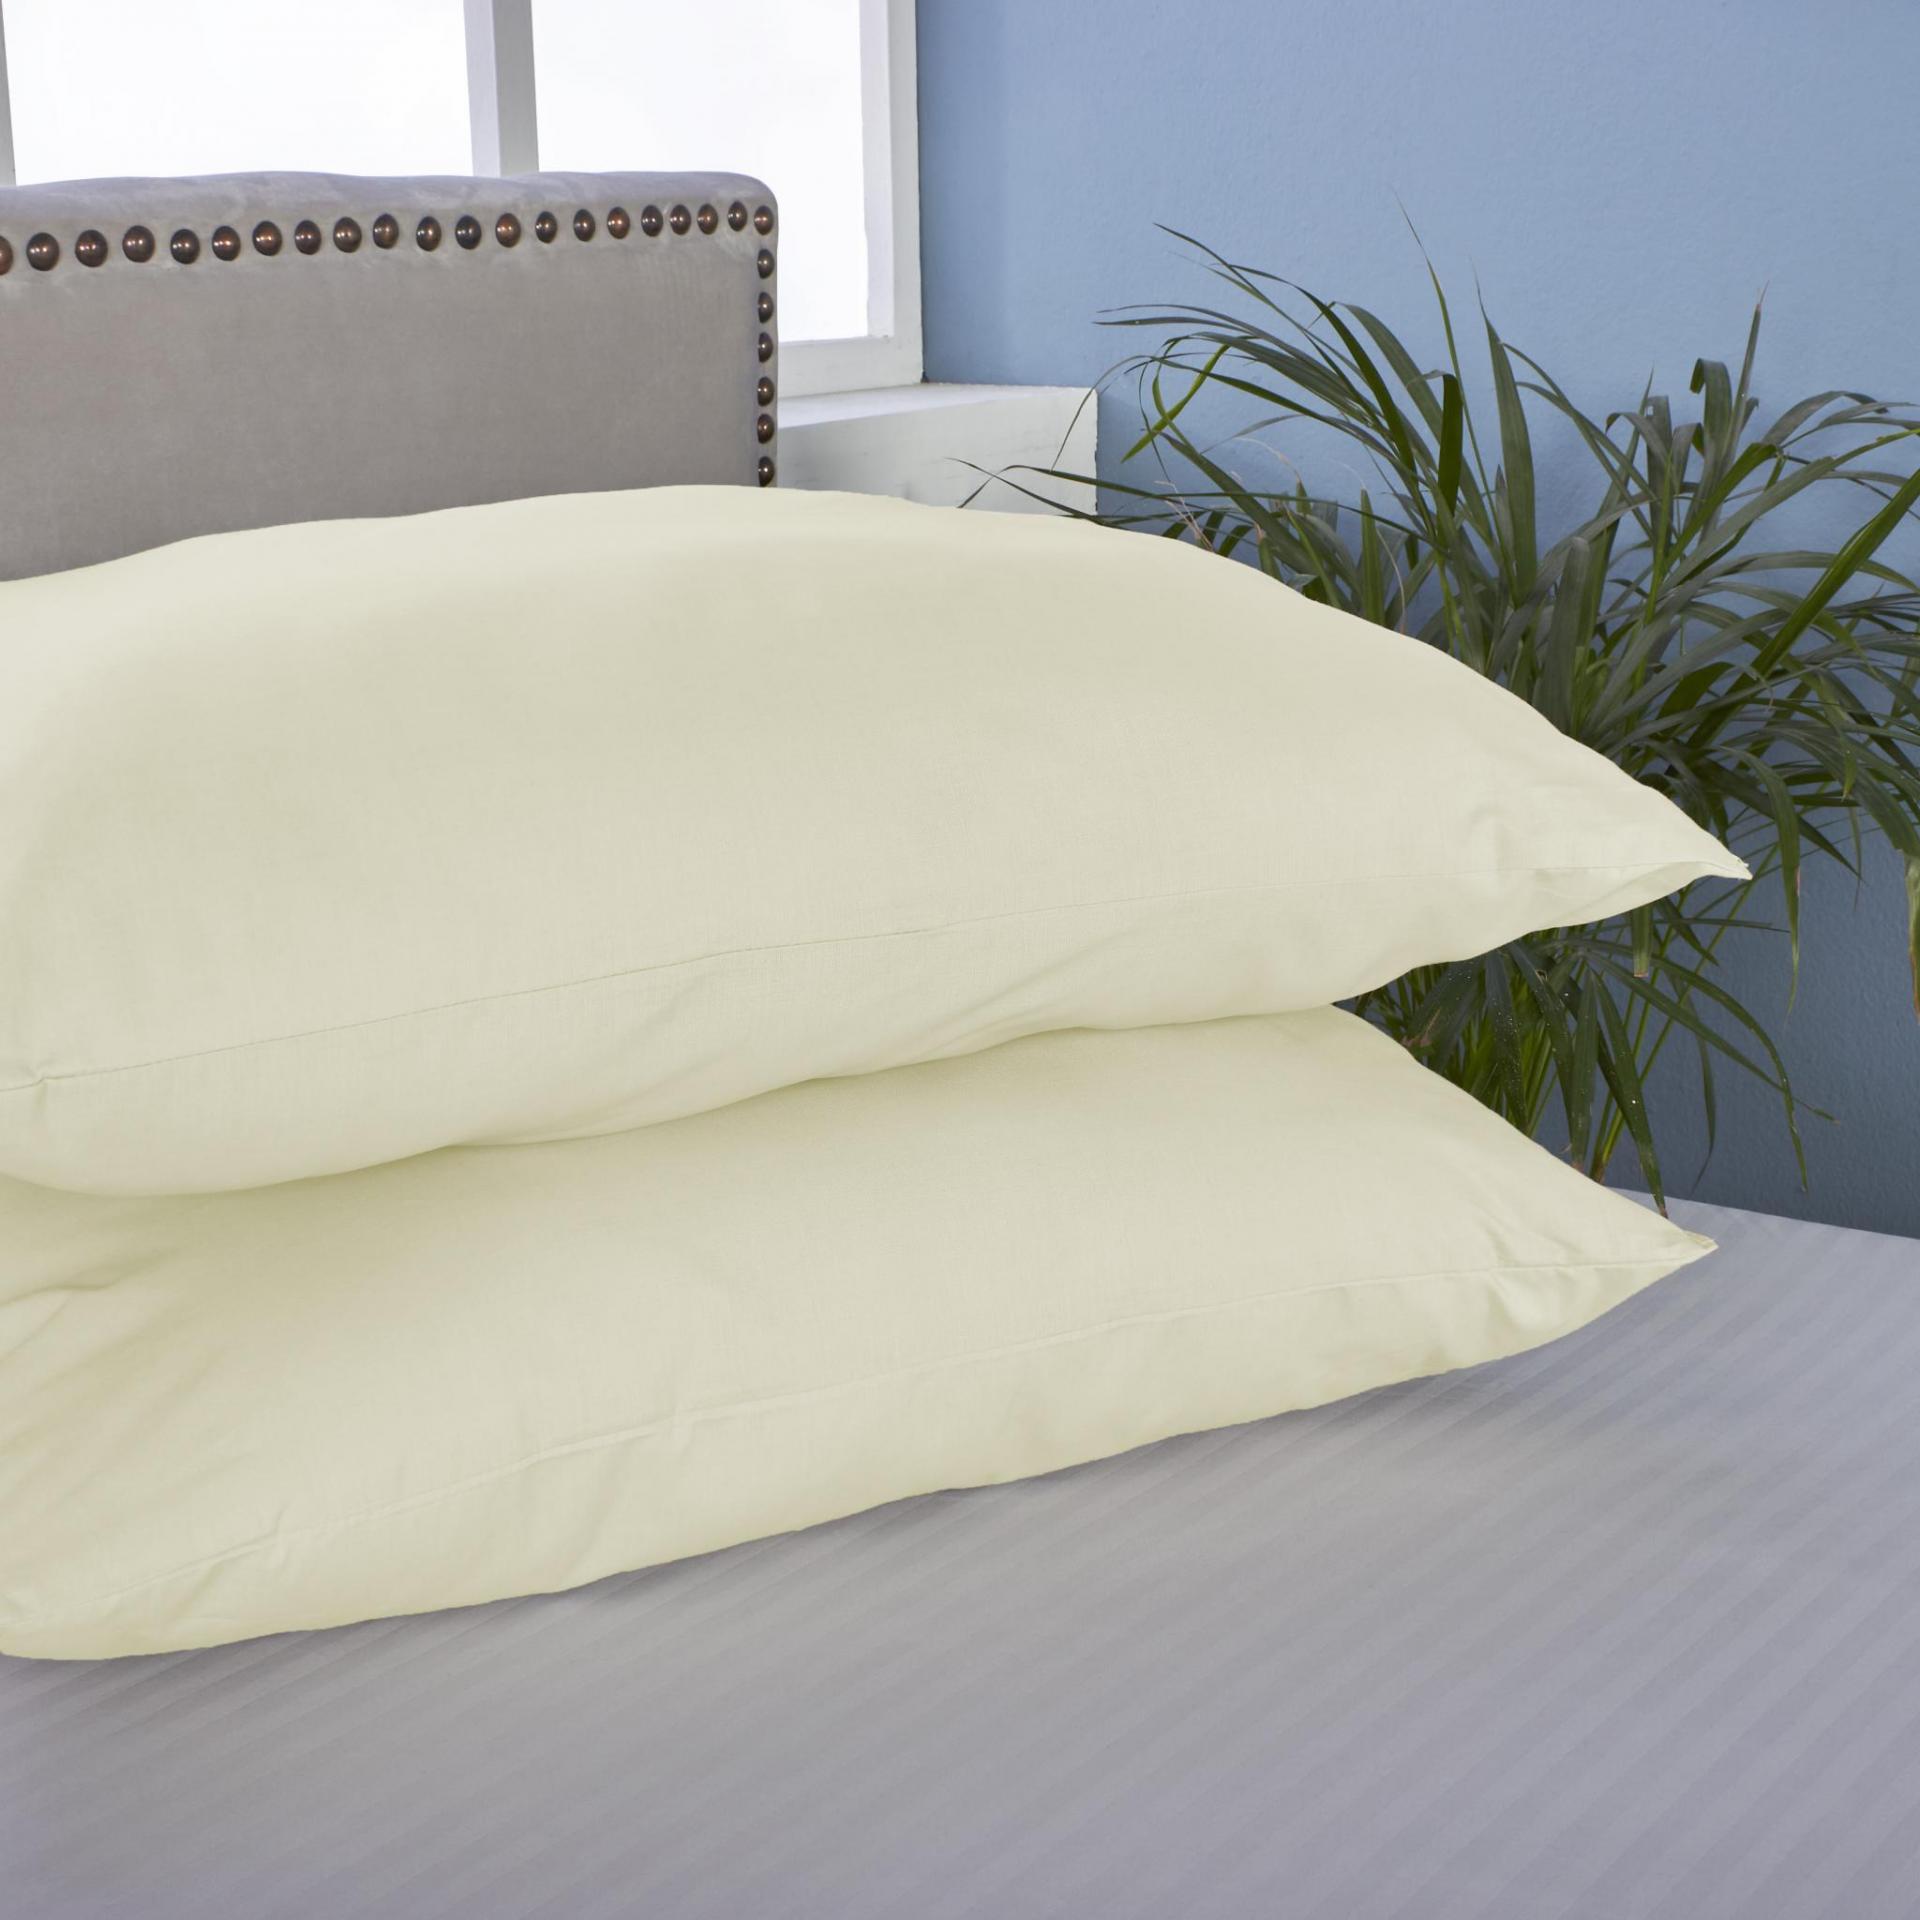 Almacenes Brissa - ¡Llego a brissa la solución de tus problemas a la hora  de dormir! Nueva Almohada antironquidos mírala aquí ->